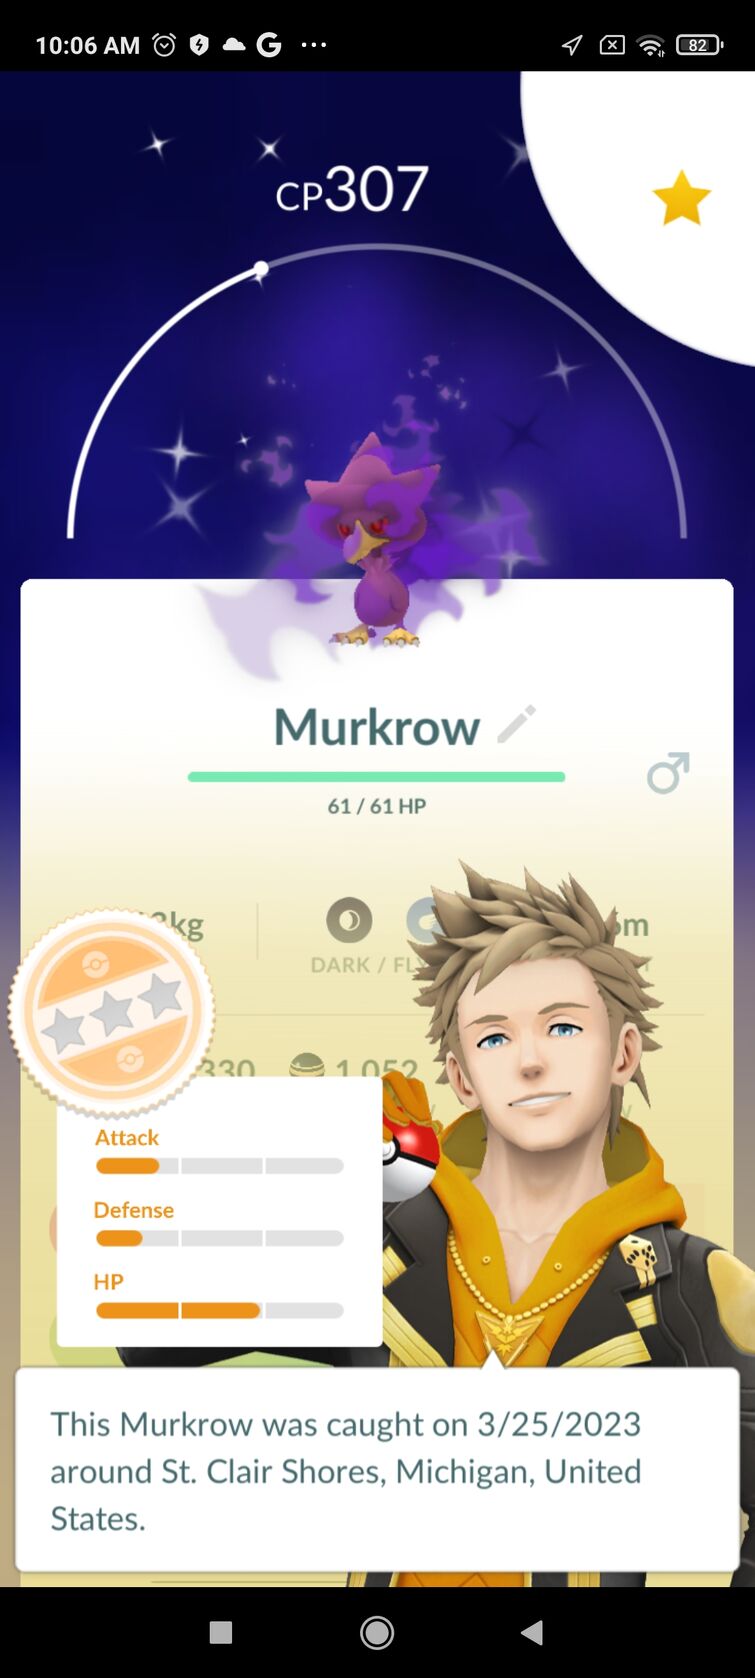 Shadow Raids bring a dark twist and Shiny Shadow Mewtwo to Pokémon